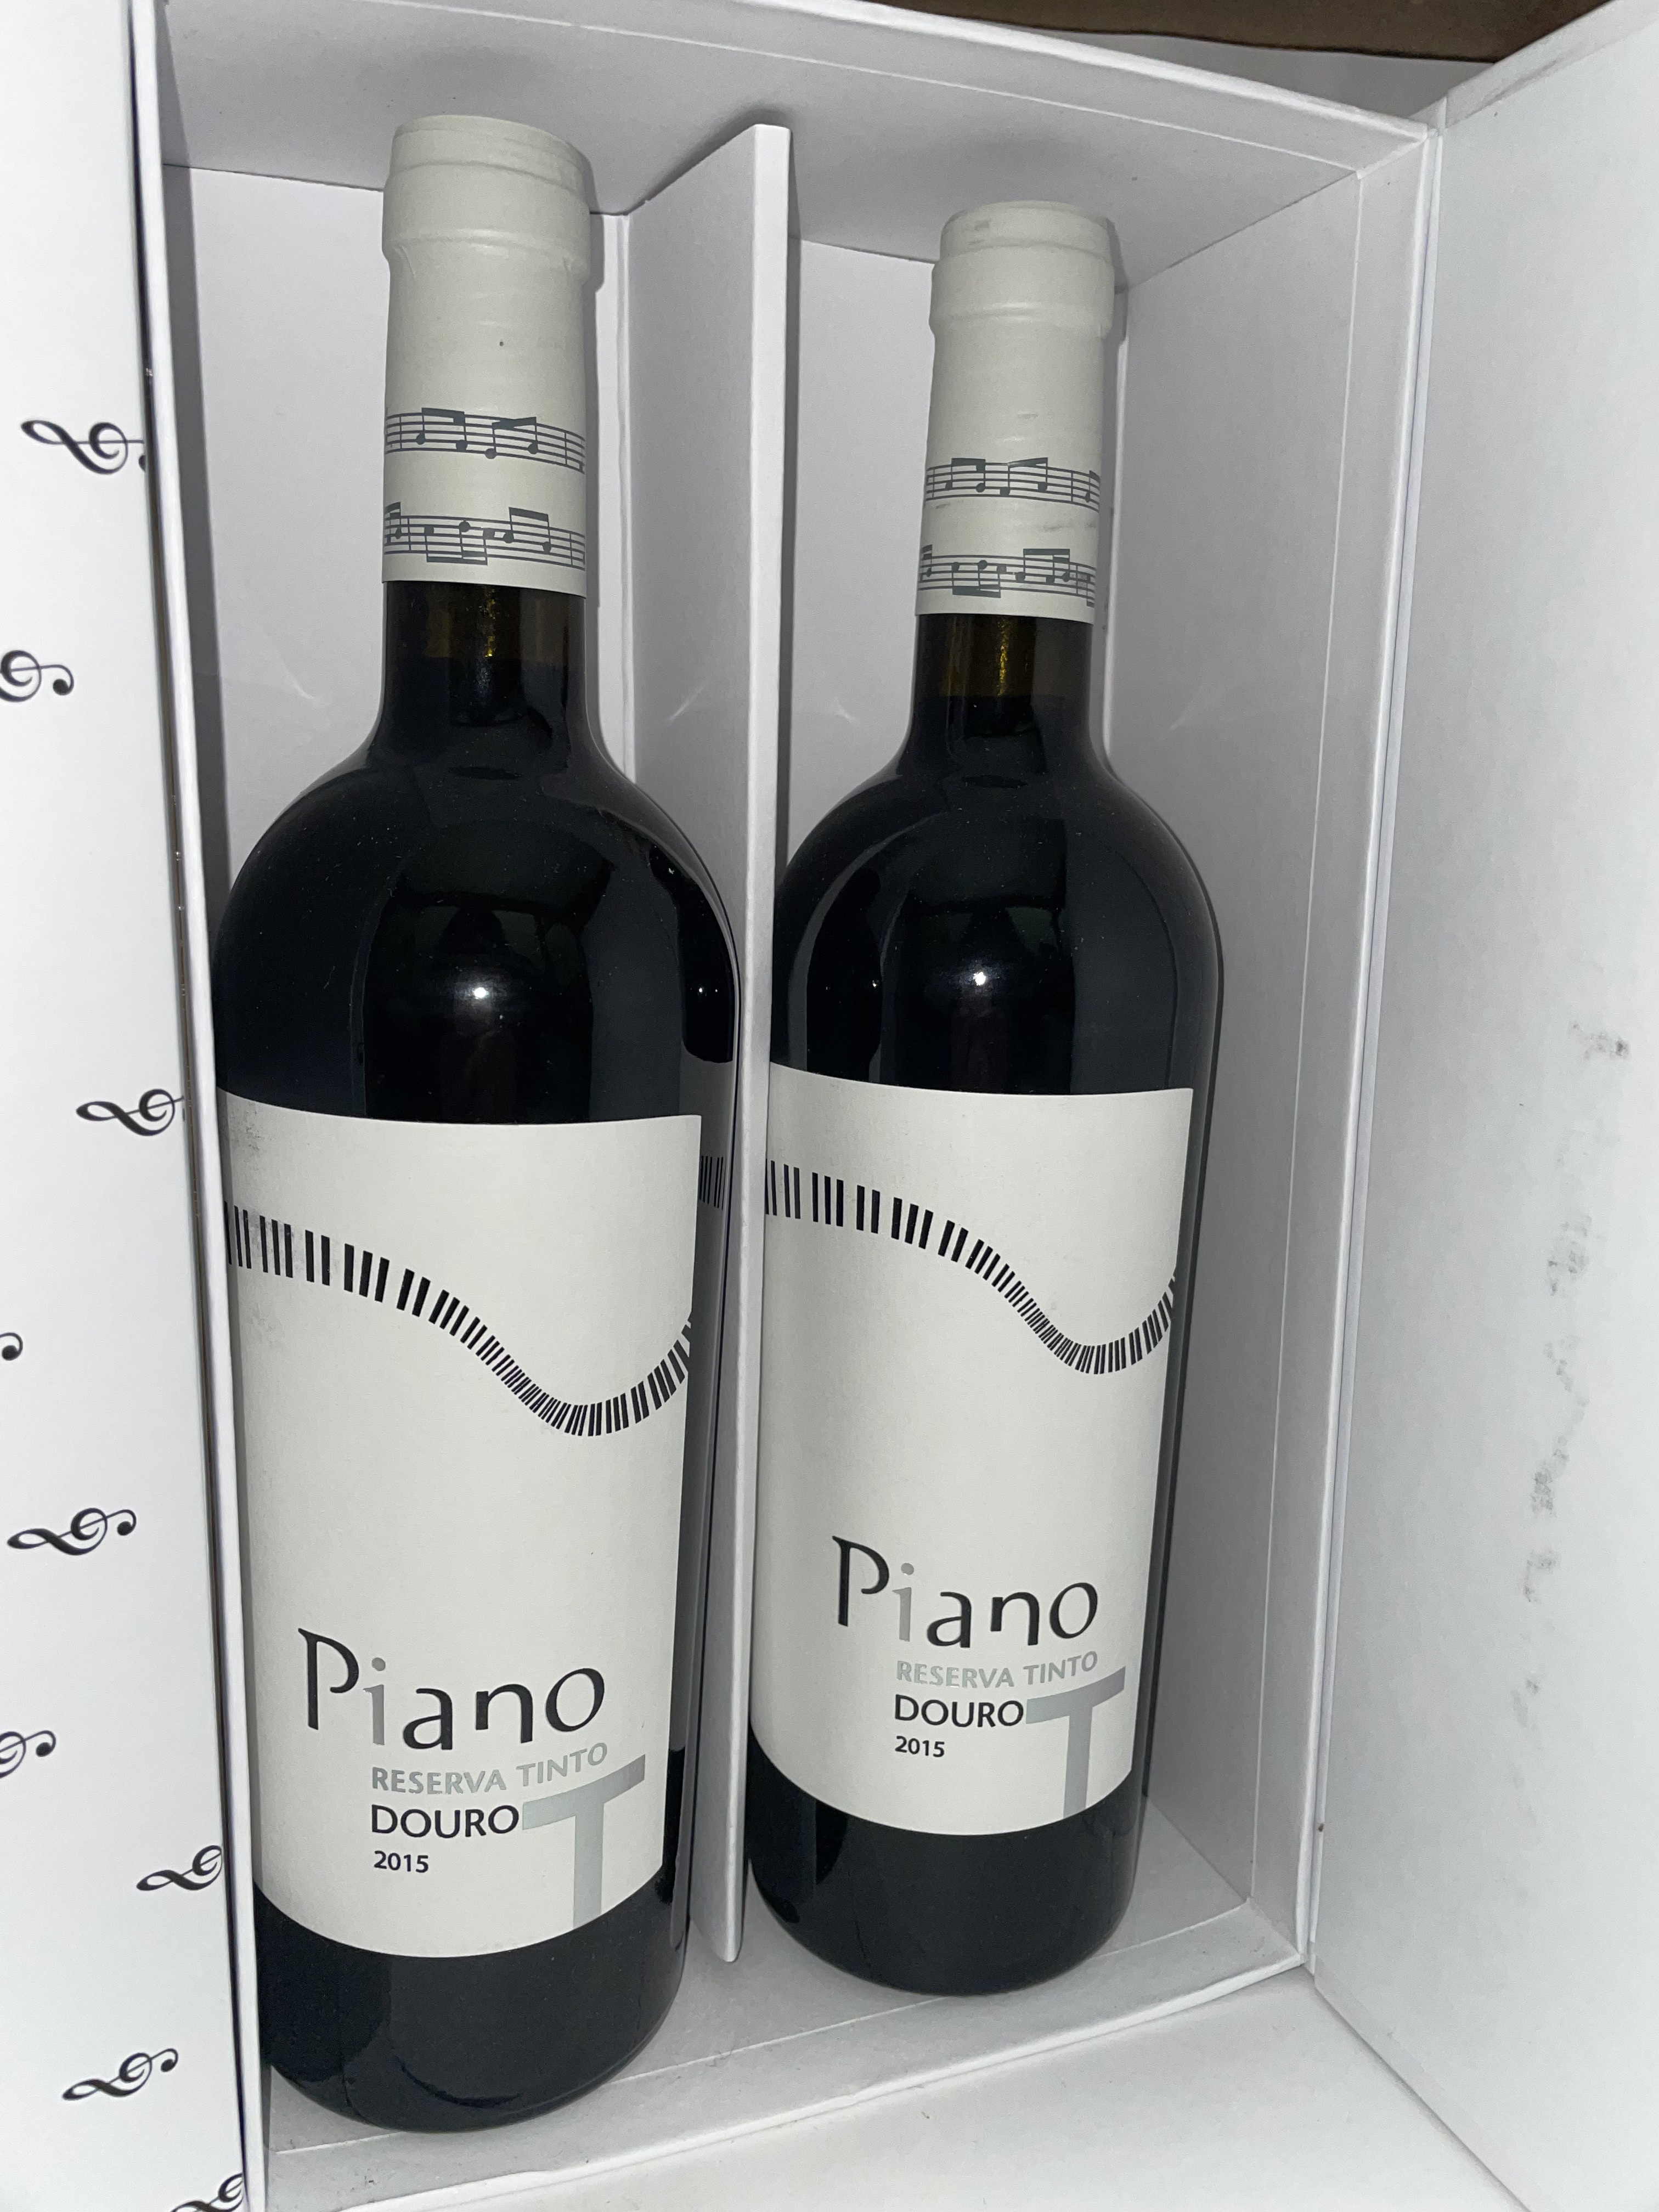 Vinho Piano reserva tinto douro 2015 (caixa de 2 garrafas)